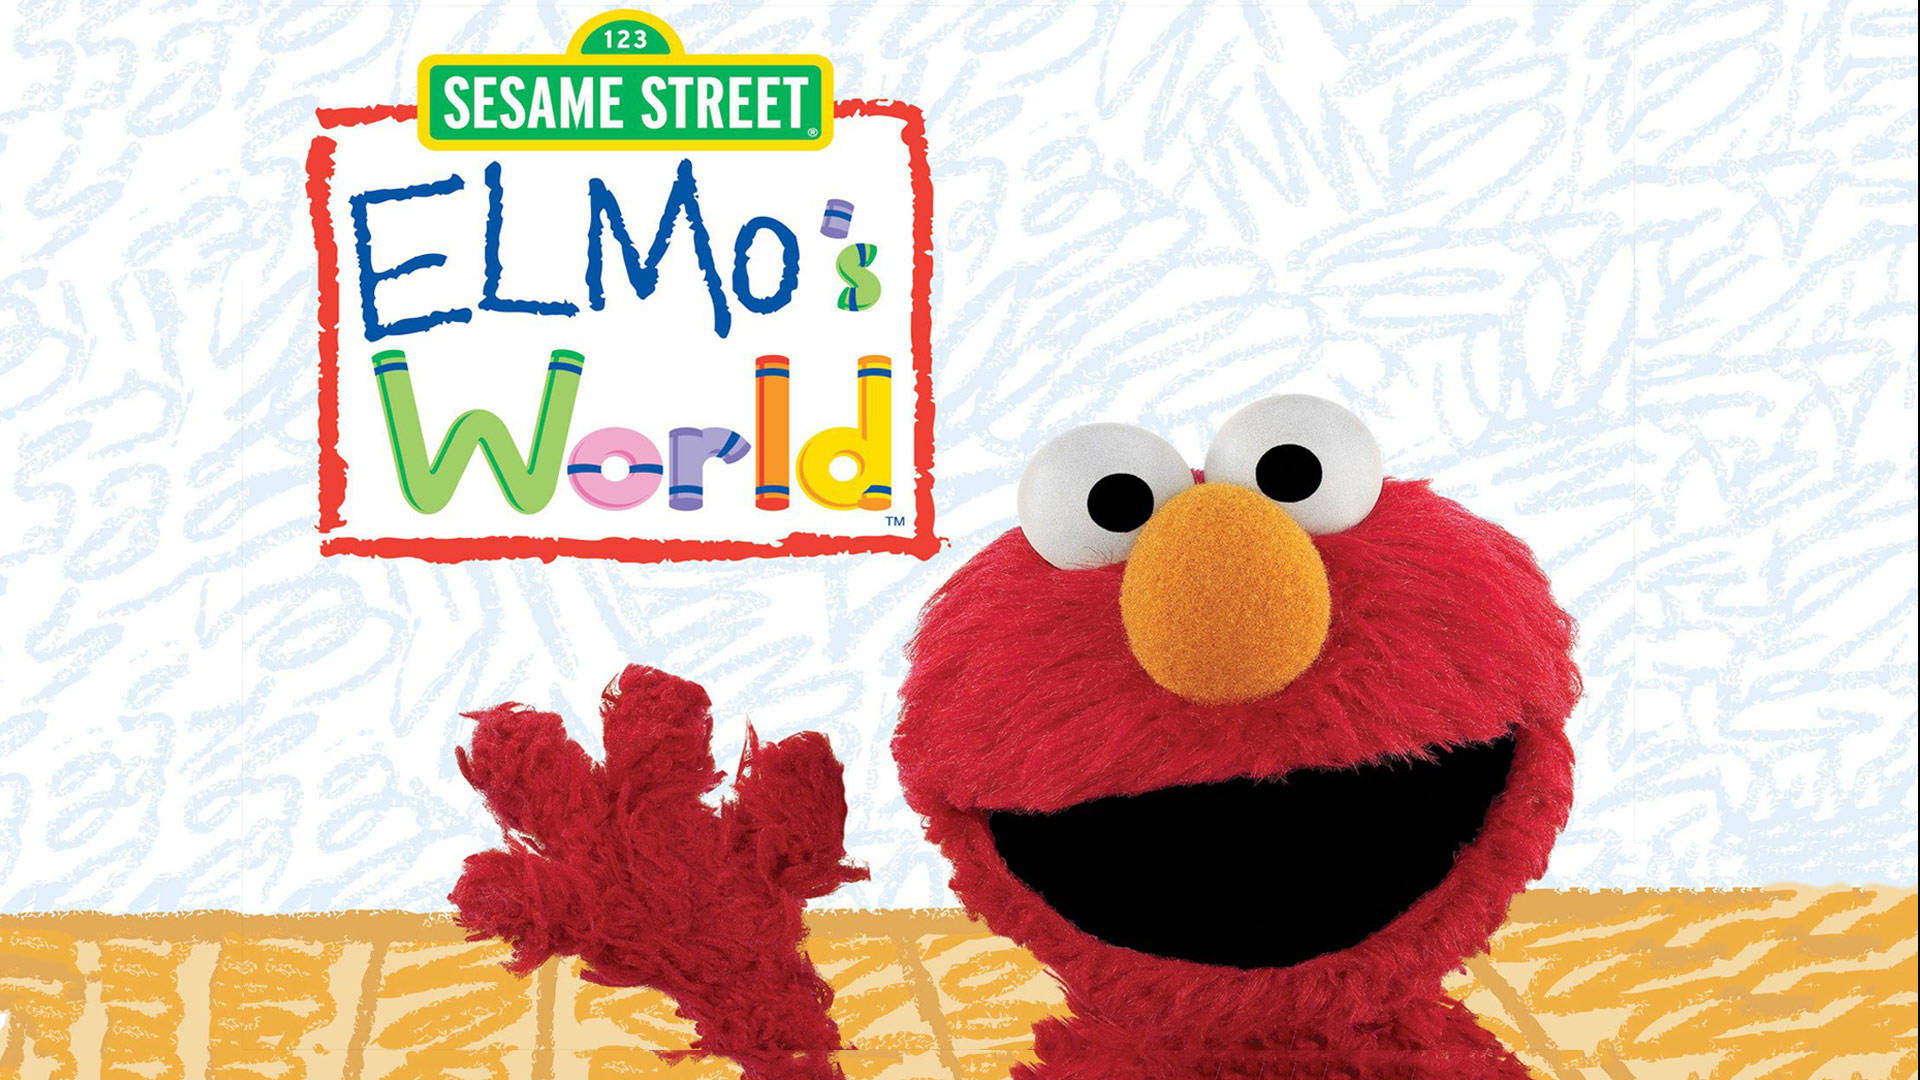 Sesame Street Elmo's World Cover Background